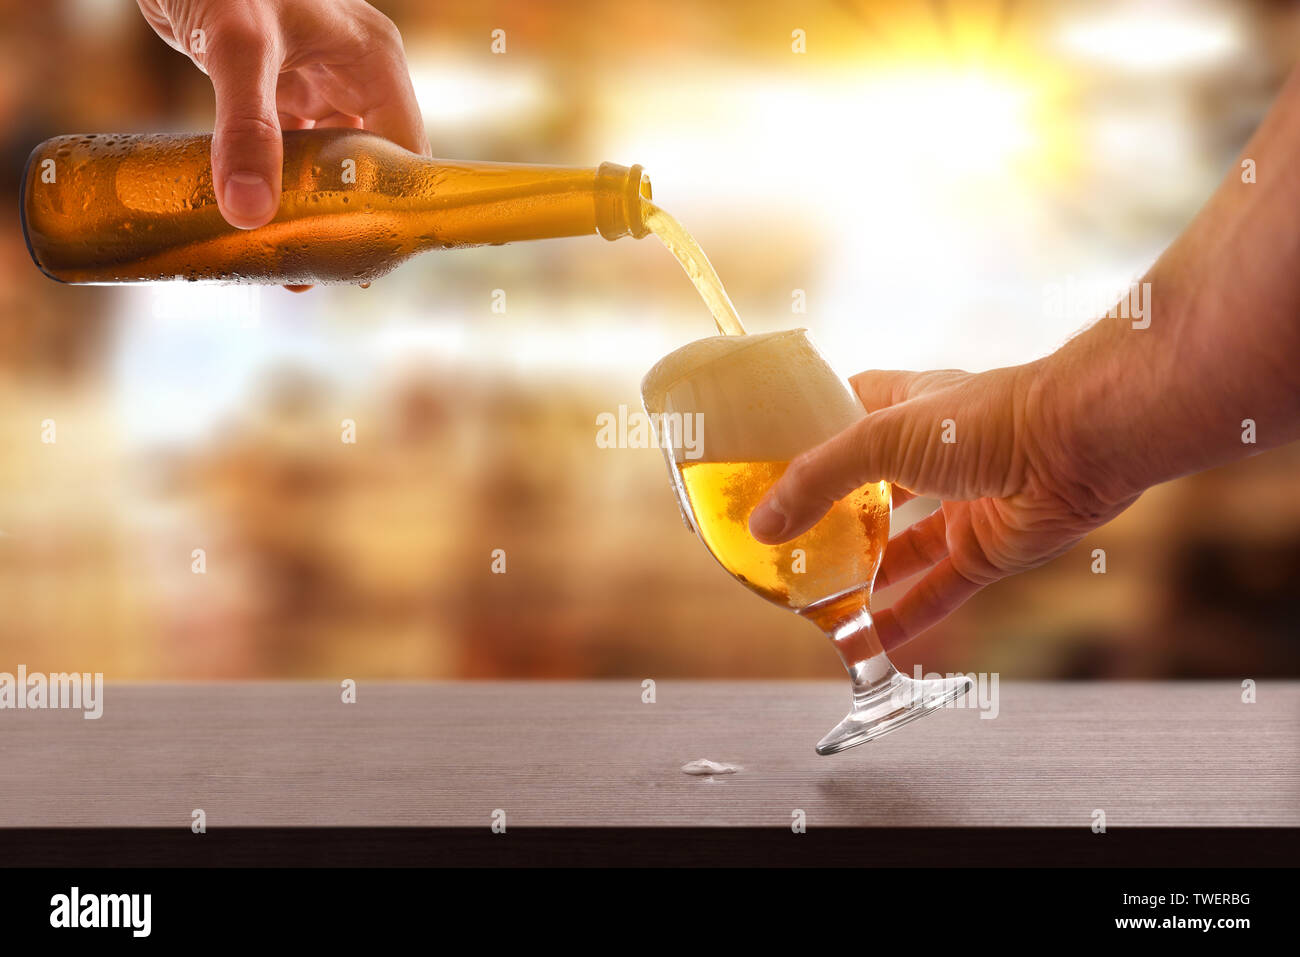 Hände füllen ein Bier Glas aus einer Glasflasche auf einer hölzernen Bar in der Freizeit statt. Horizontale Komposition. Vorderansicht. Stockfoto